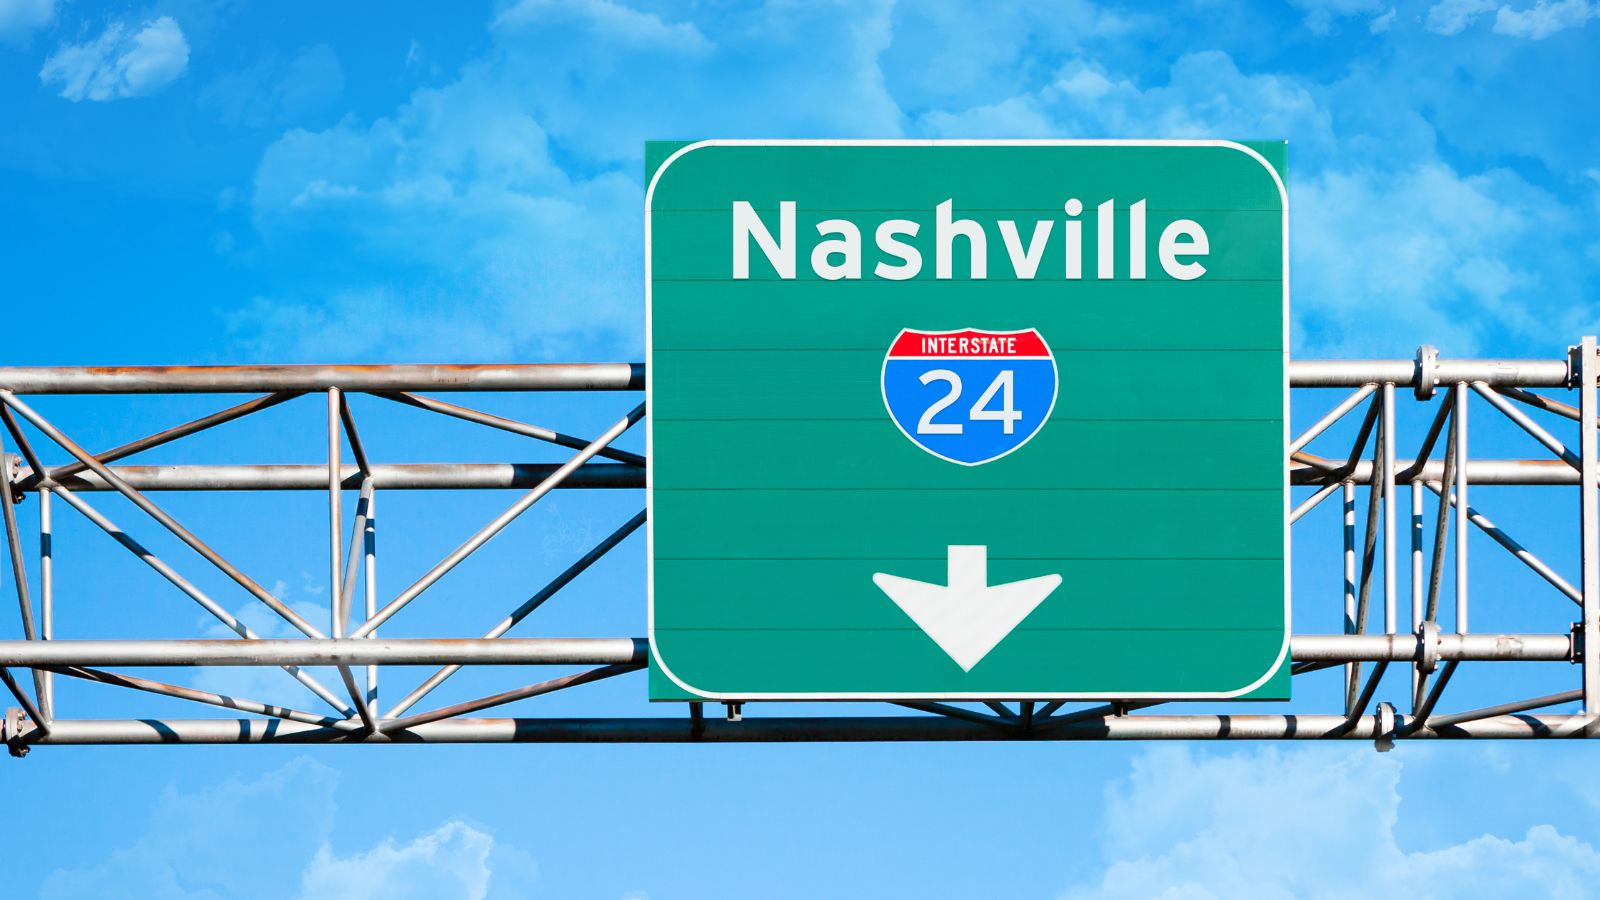 Nashville highway sign